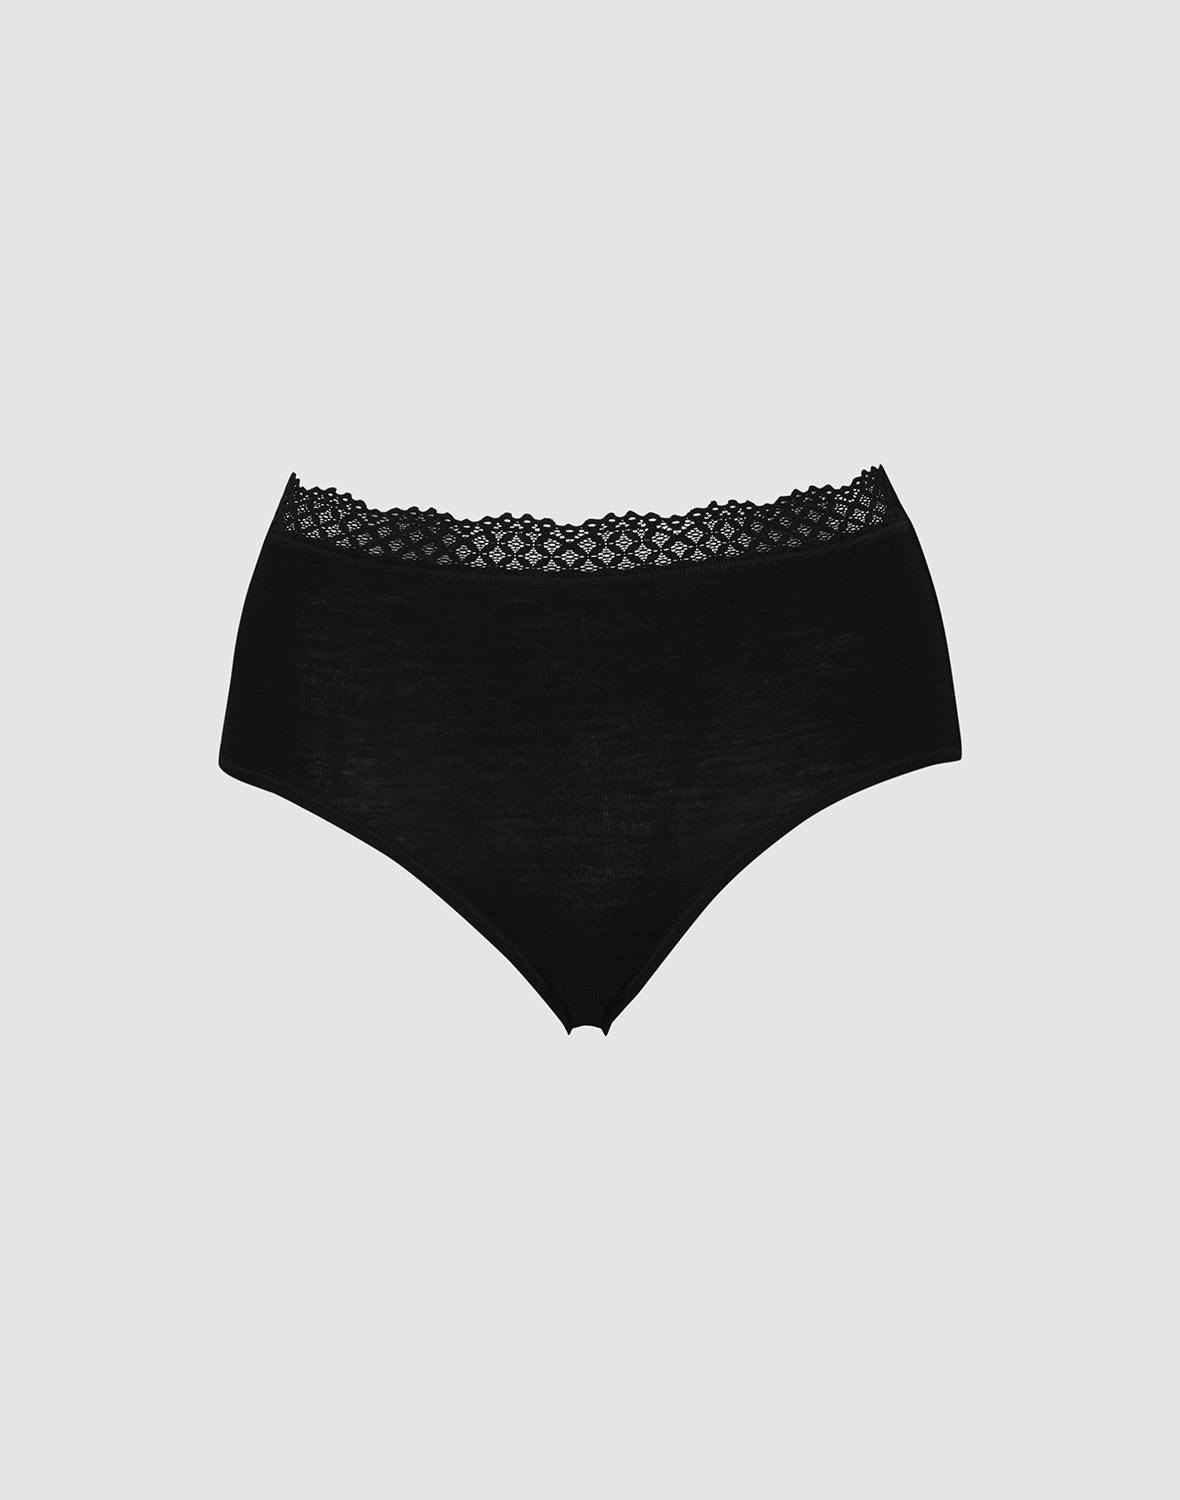 DILLING Women's Merino Briefs - Merino Wool Underwear for Ladies Black 8 :  : Fashion